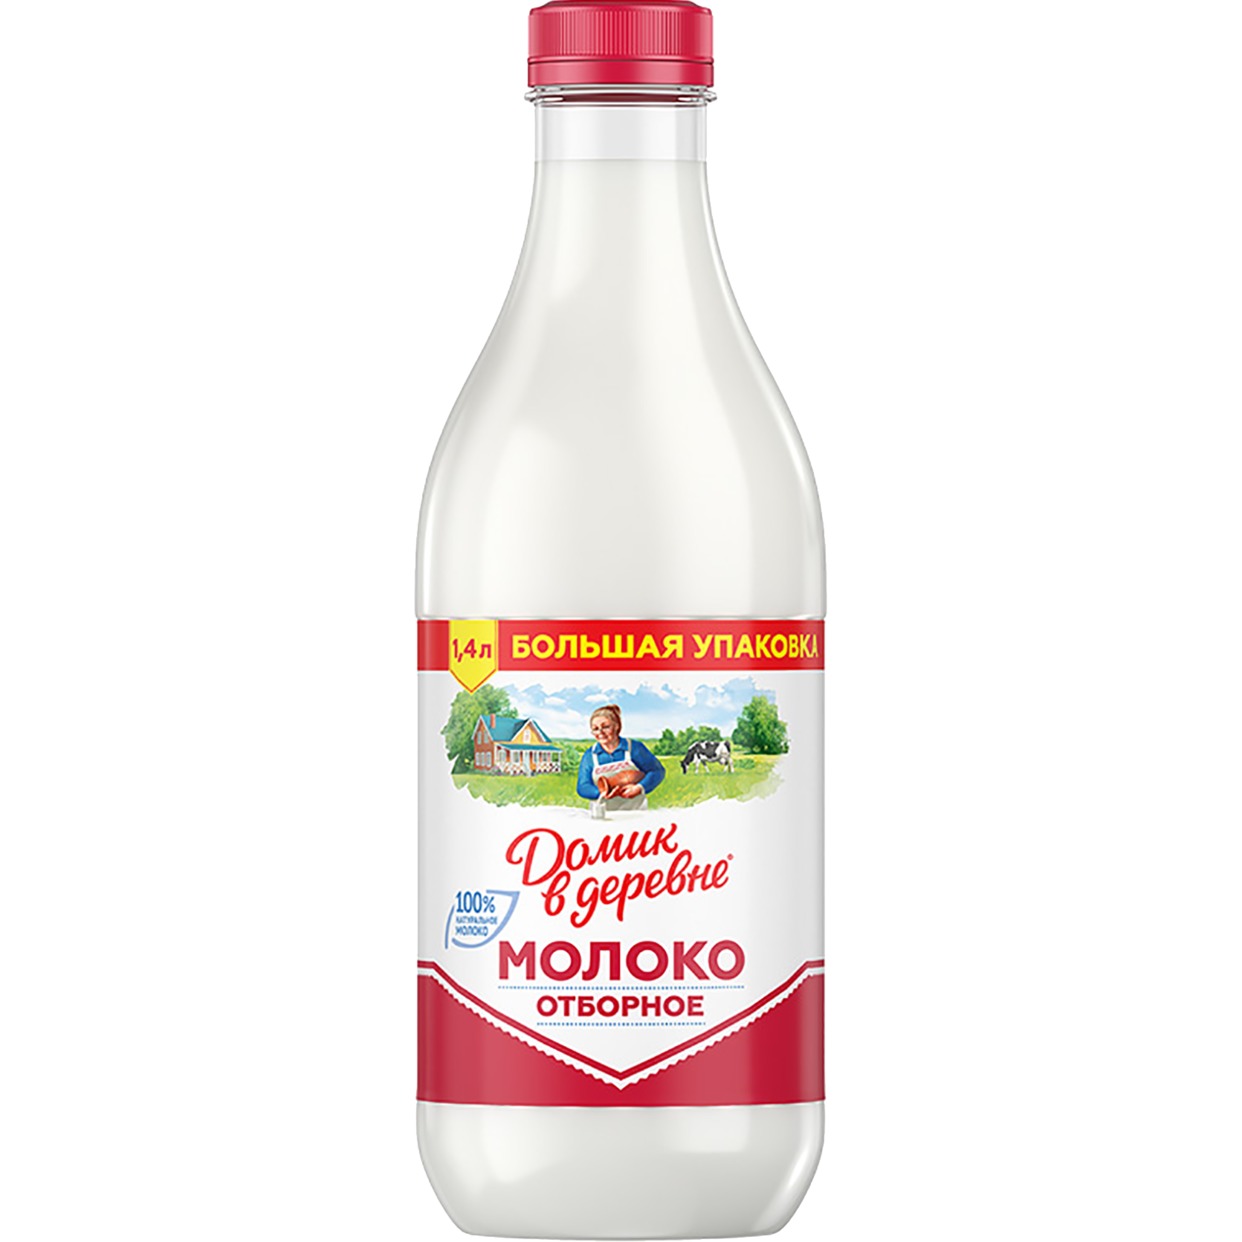 Молоко Домик в деревне, отборное, пастеризованное, 3,7%, 1400 мл по акции в Пятерочке